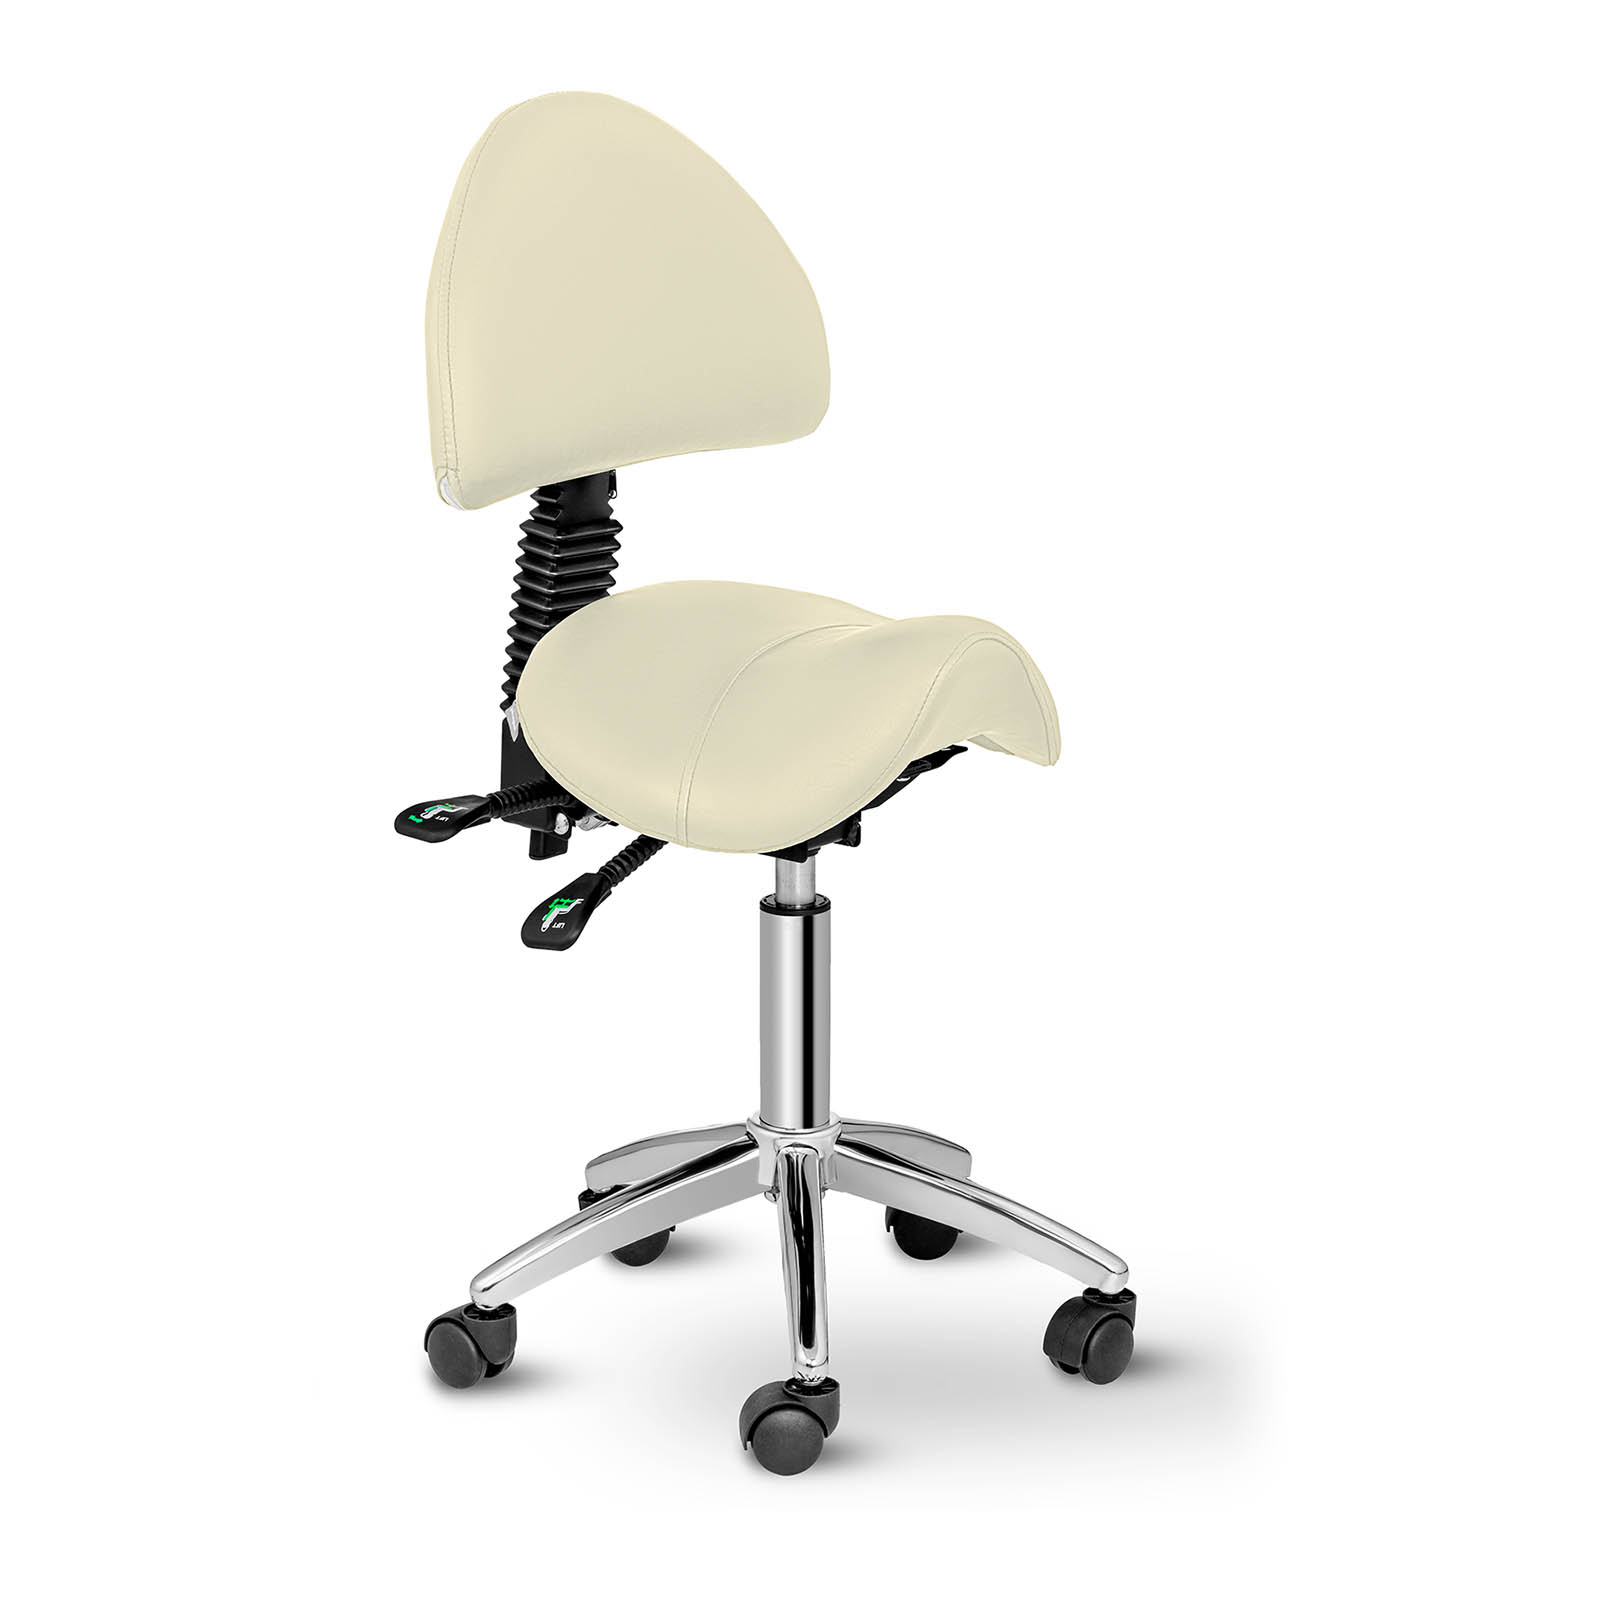 Sedlová židle - 550-690 mm - 150 kg - Béžová